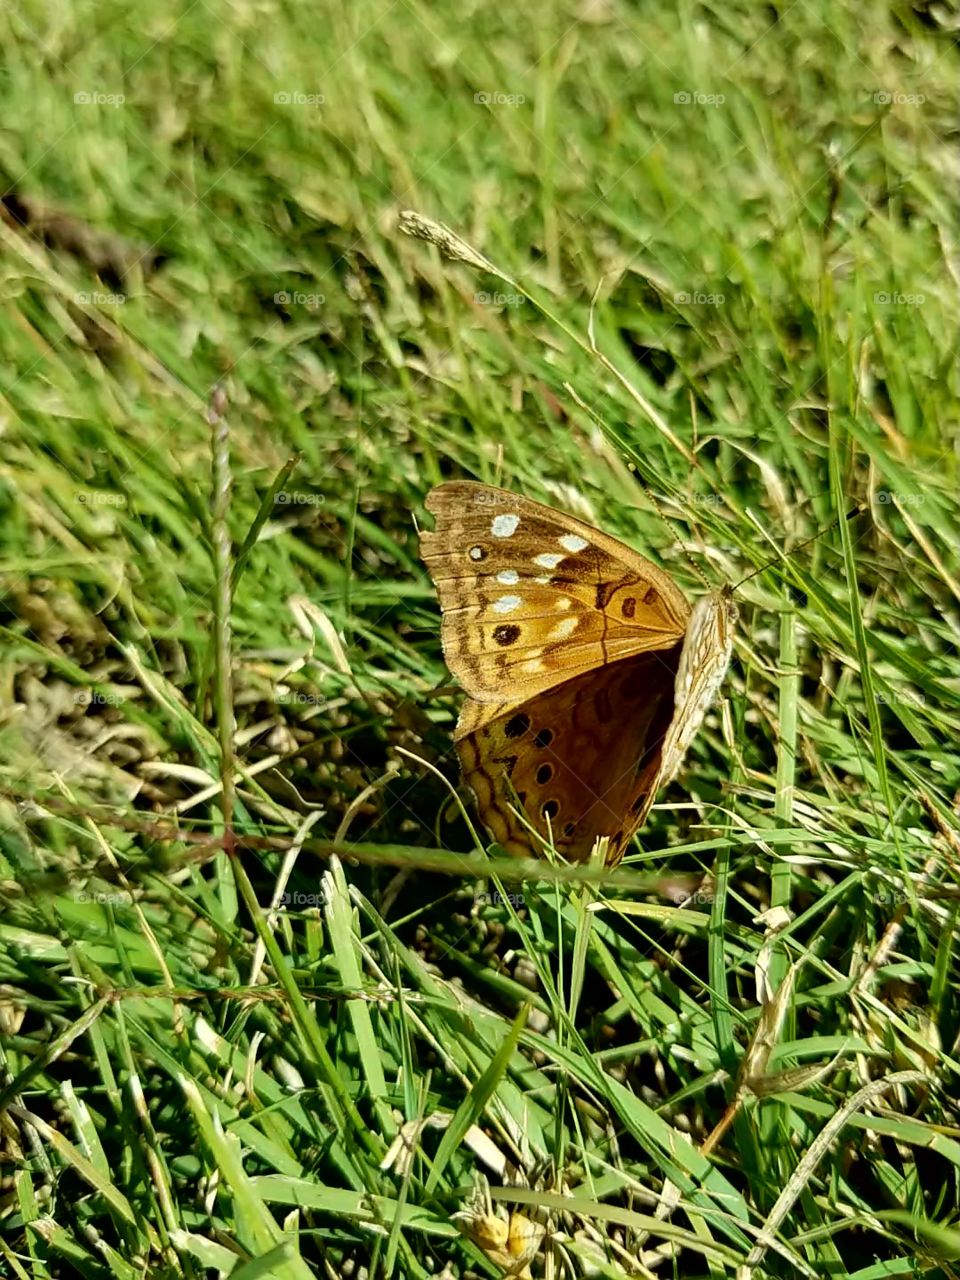 Butterfly in a field